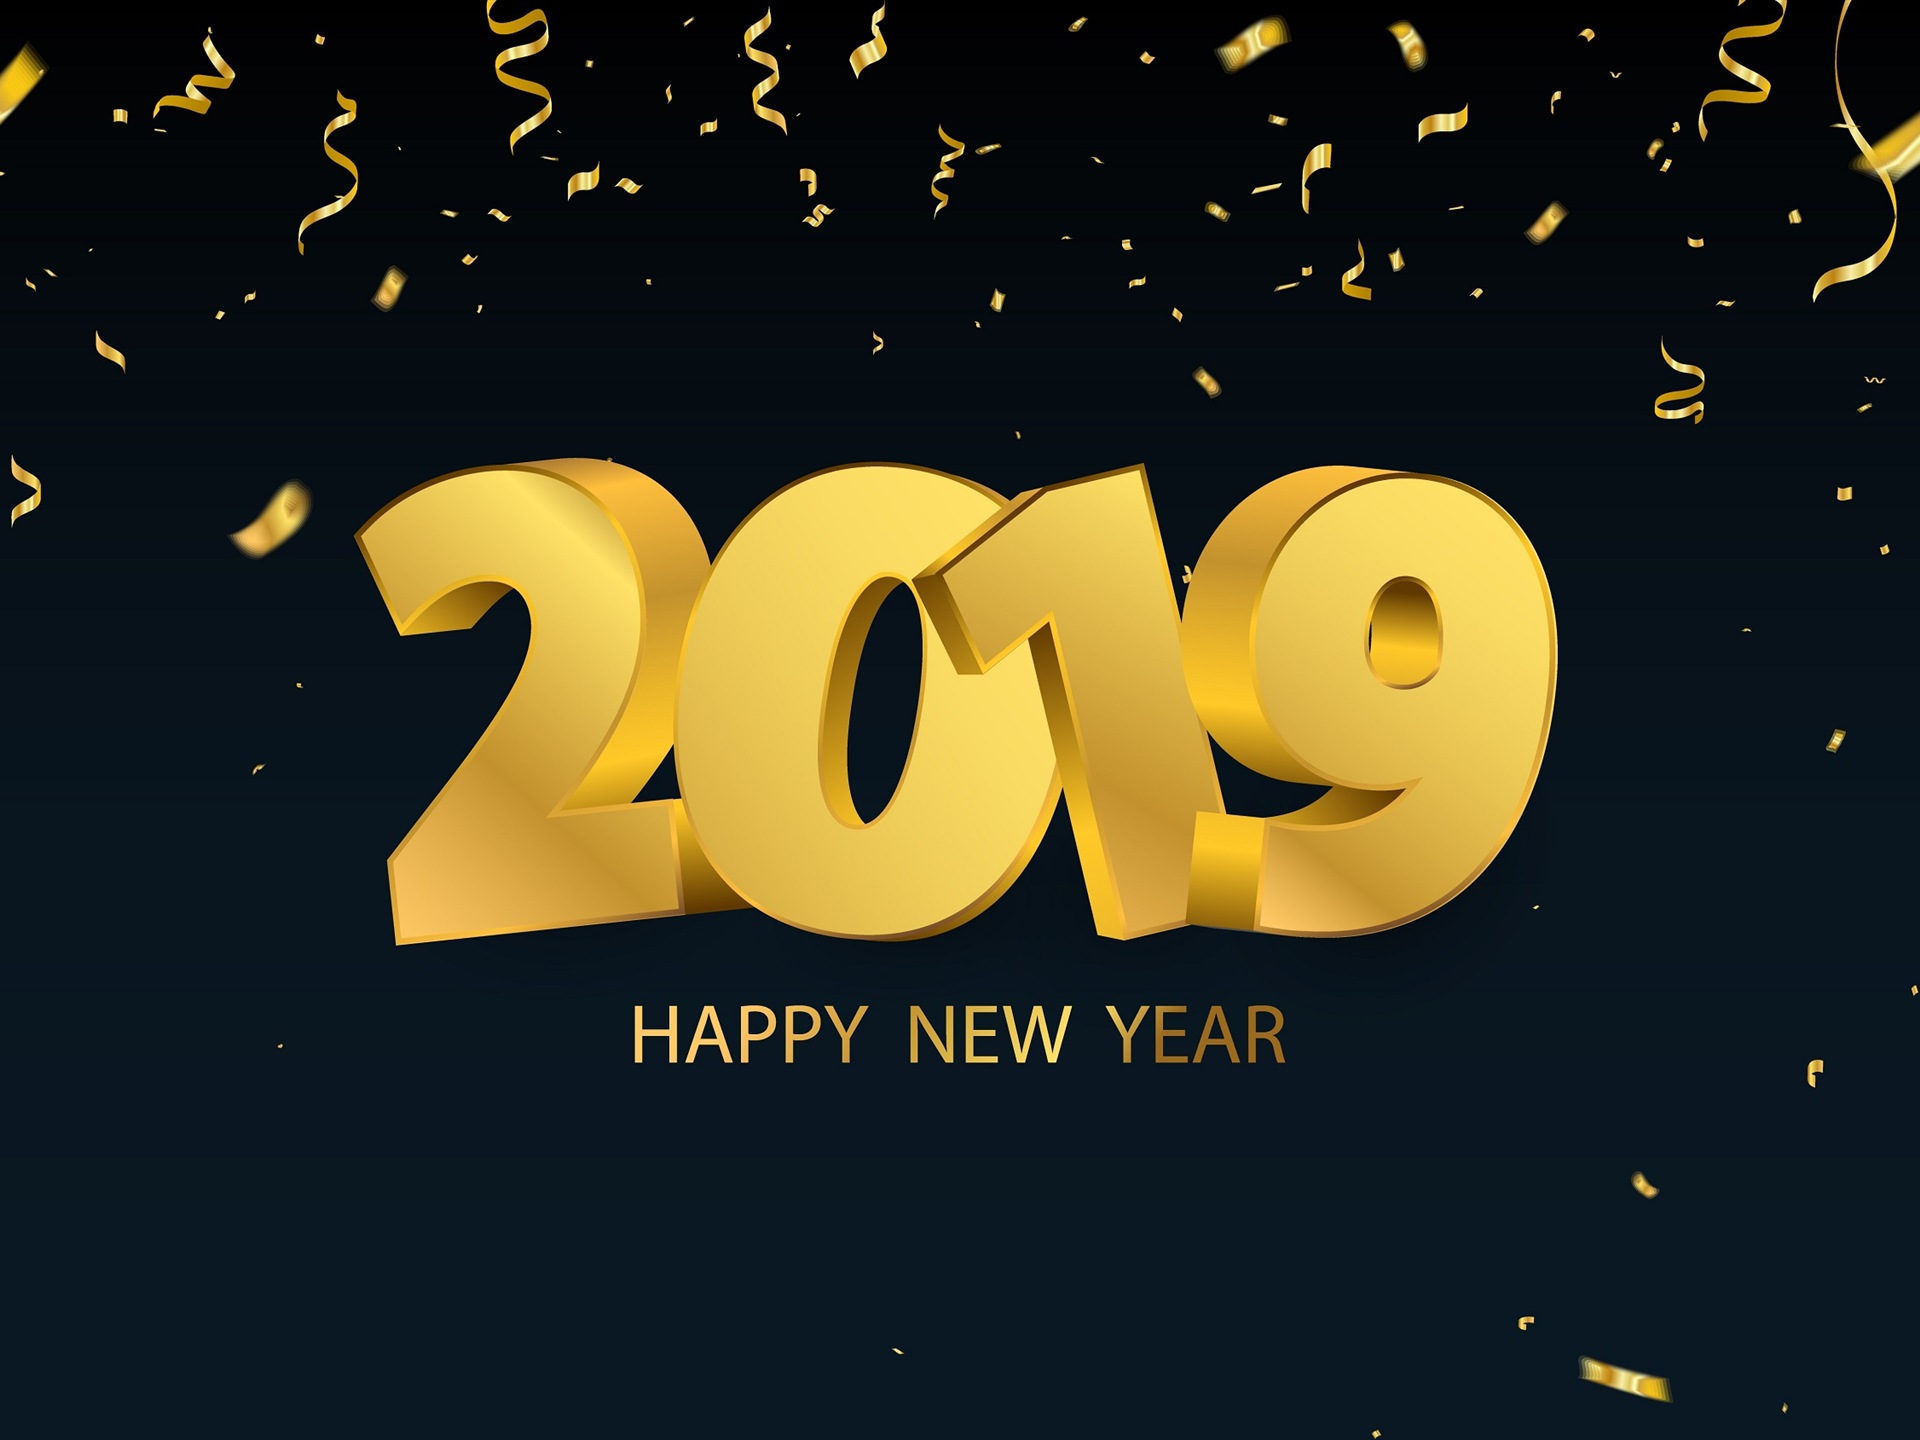 Feliz año nuevo 2019 HD wallpapers #13 - 1920x1440